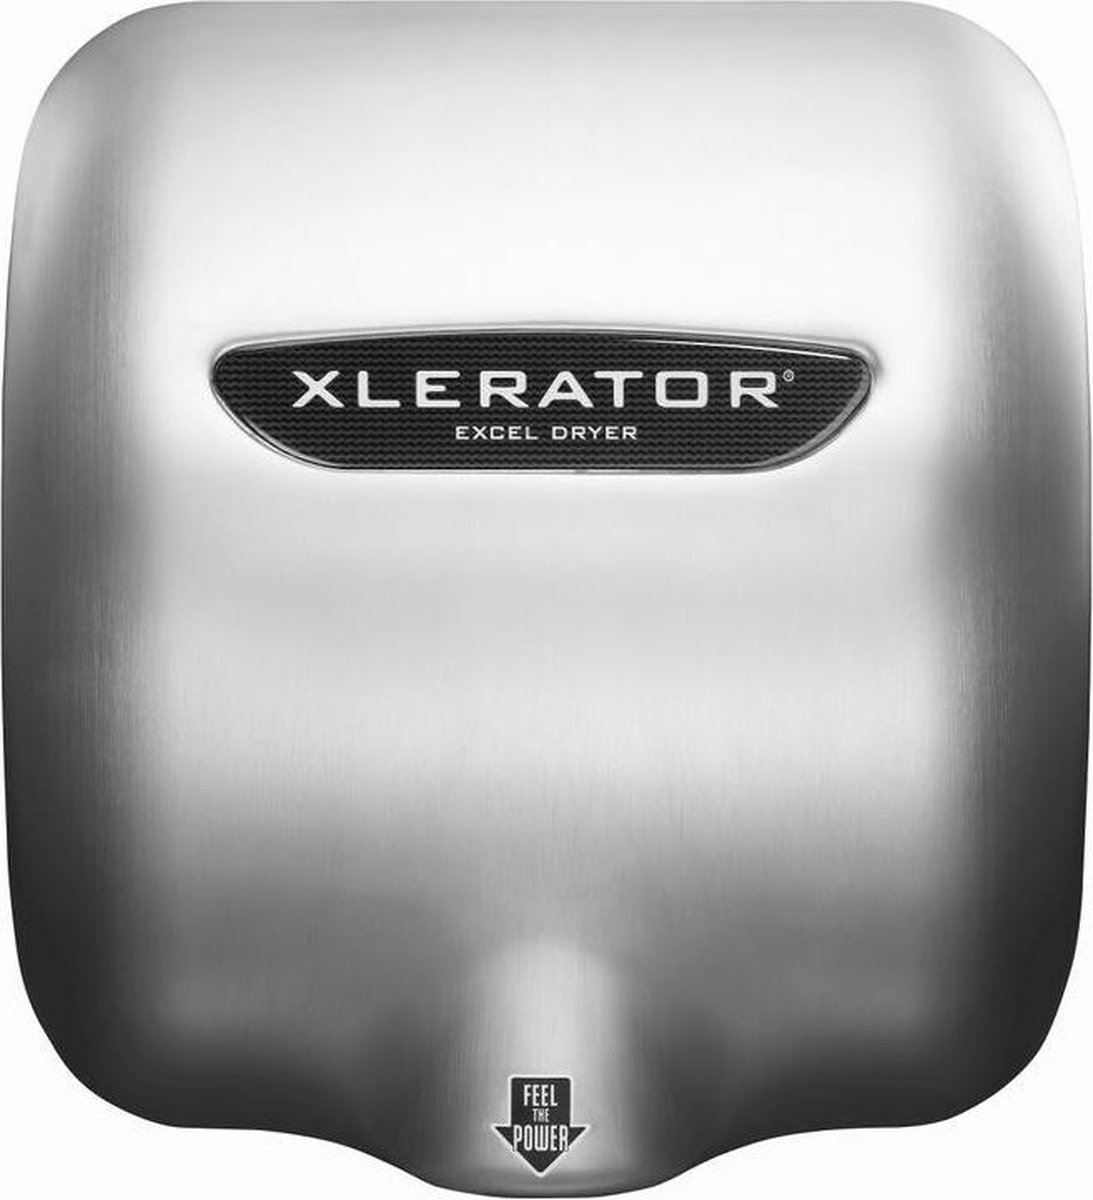 Milieuvriendelijke en zuinige handdroger Xlerator XL-SB met 1400 watt